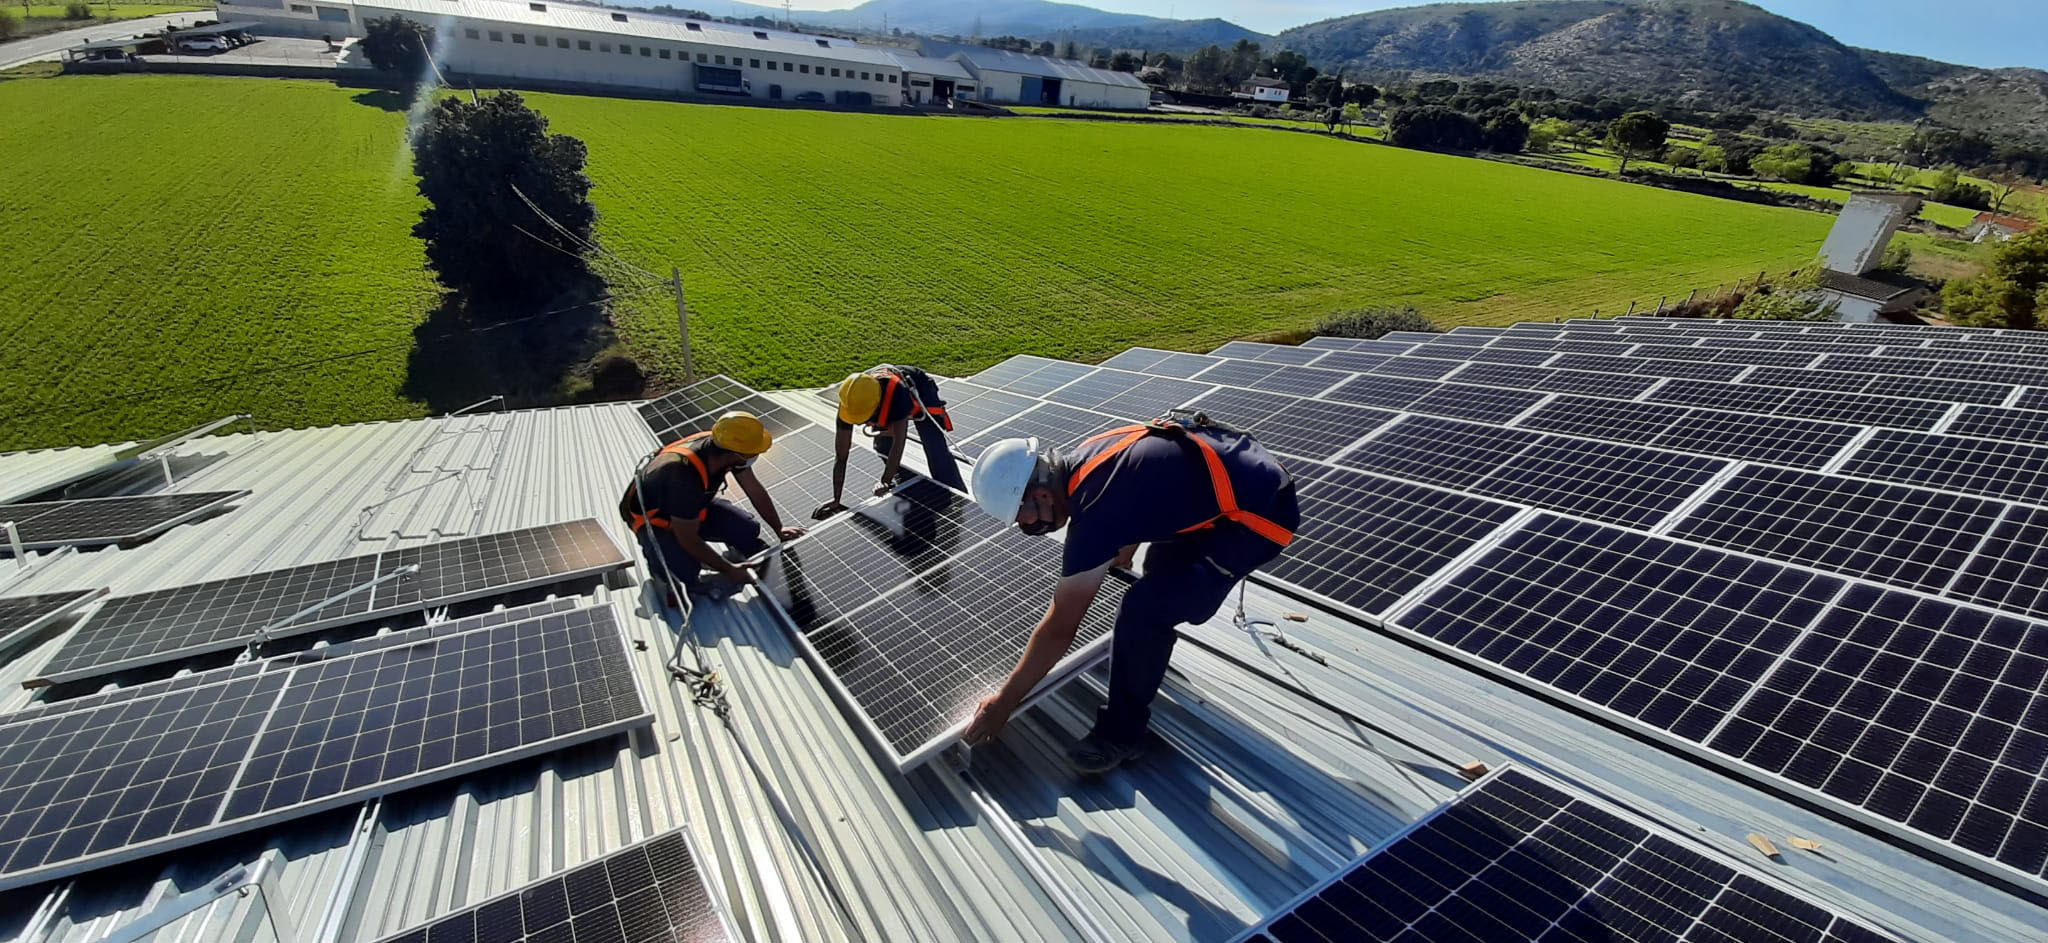 Baterías solares como complemento de instalaciones fotovoltaicas